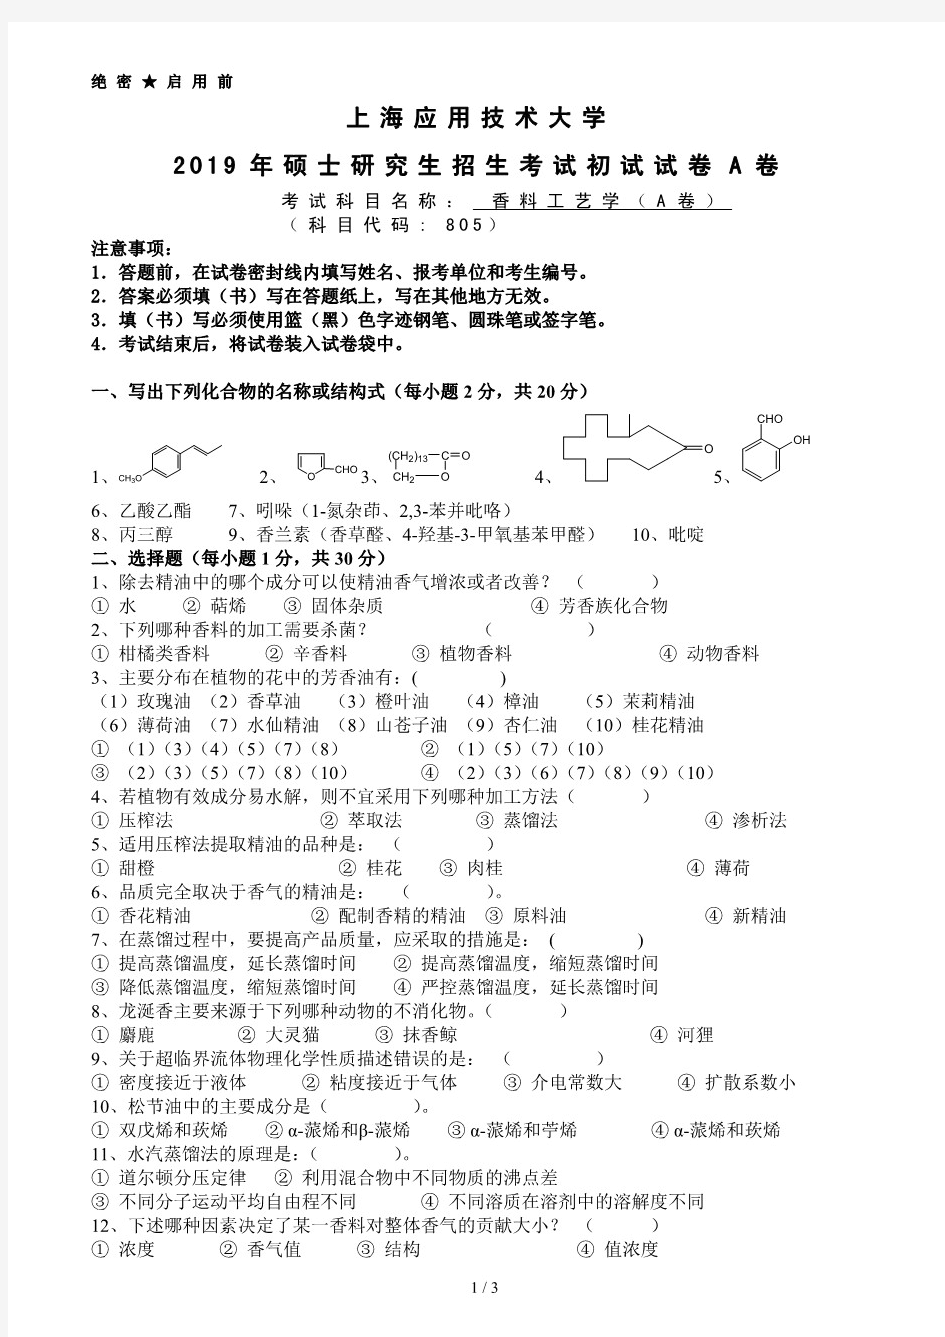 上海应用技术大学805香料工艺学2019年考研真题试题